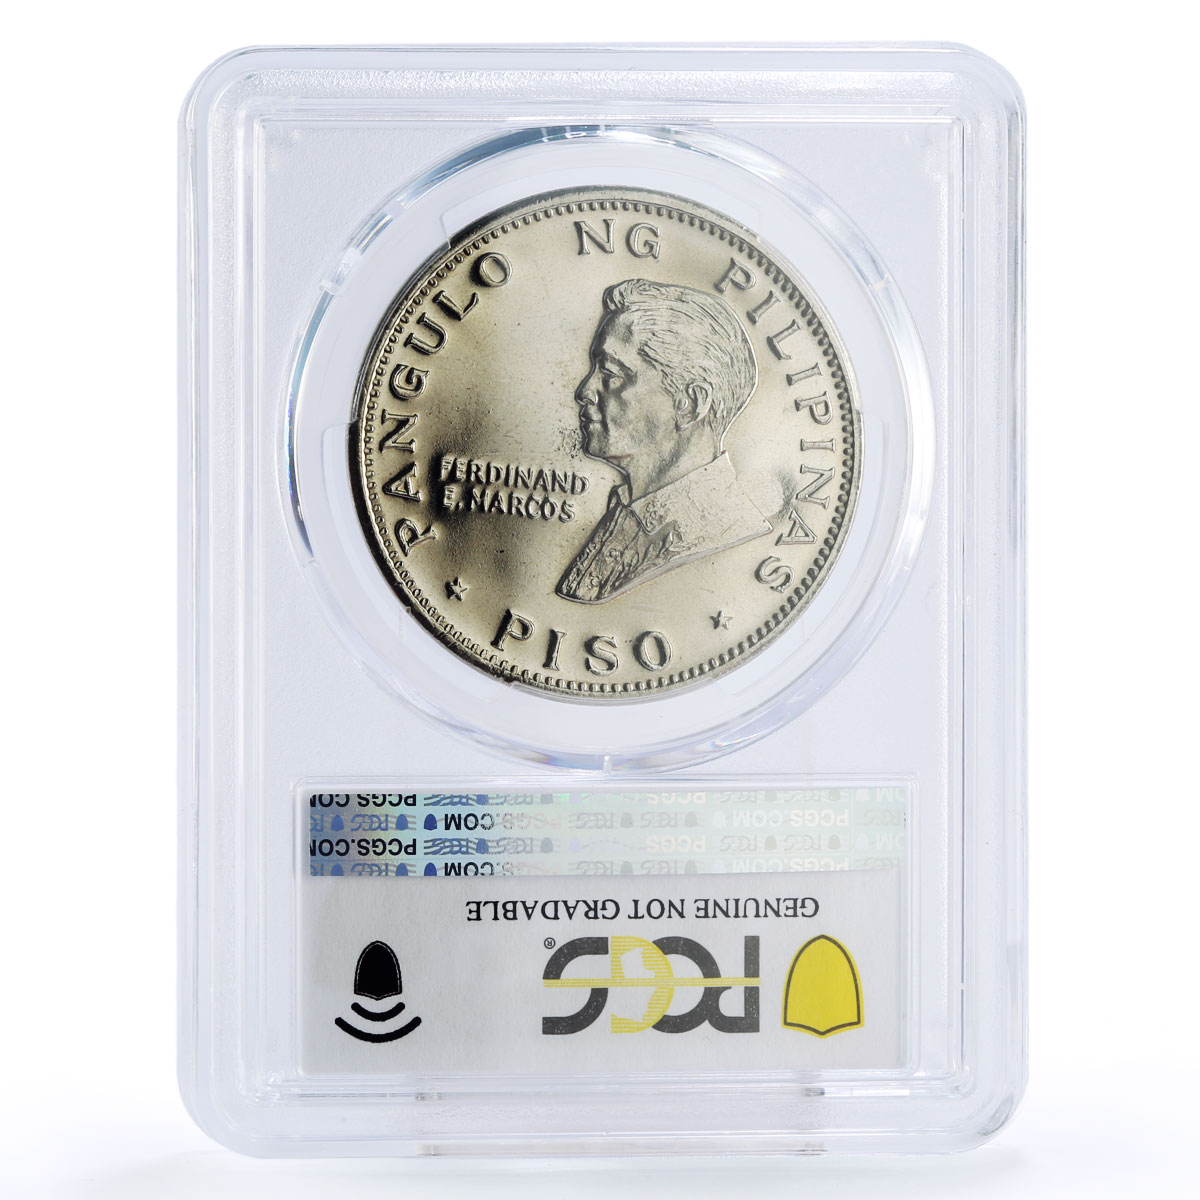 Philippines 1 piso Pope Paul VI Visit Genuine UNC Details PCGS nickel coin 1970